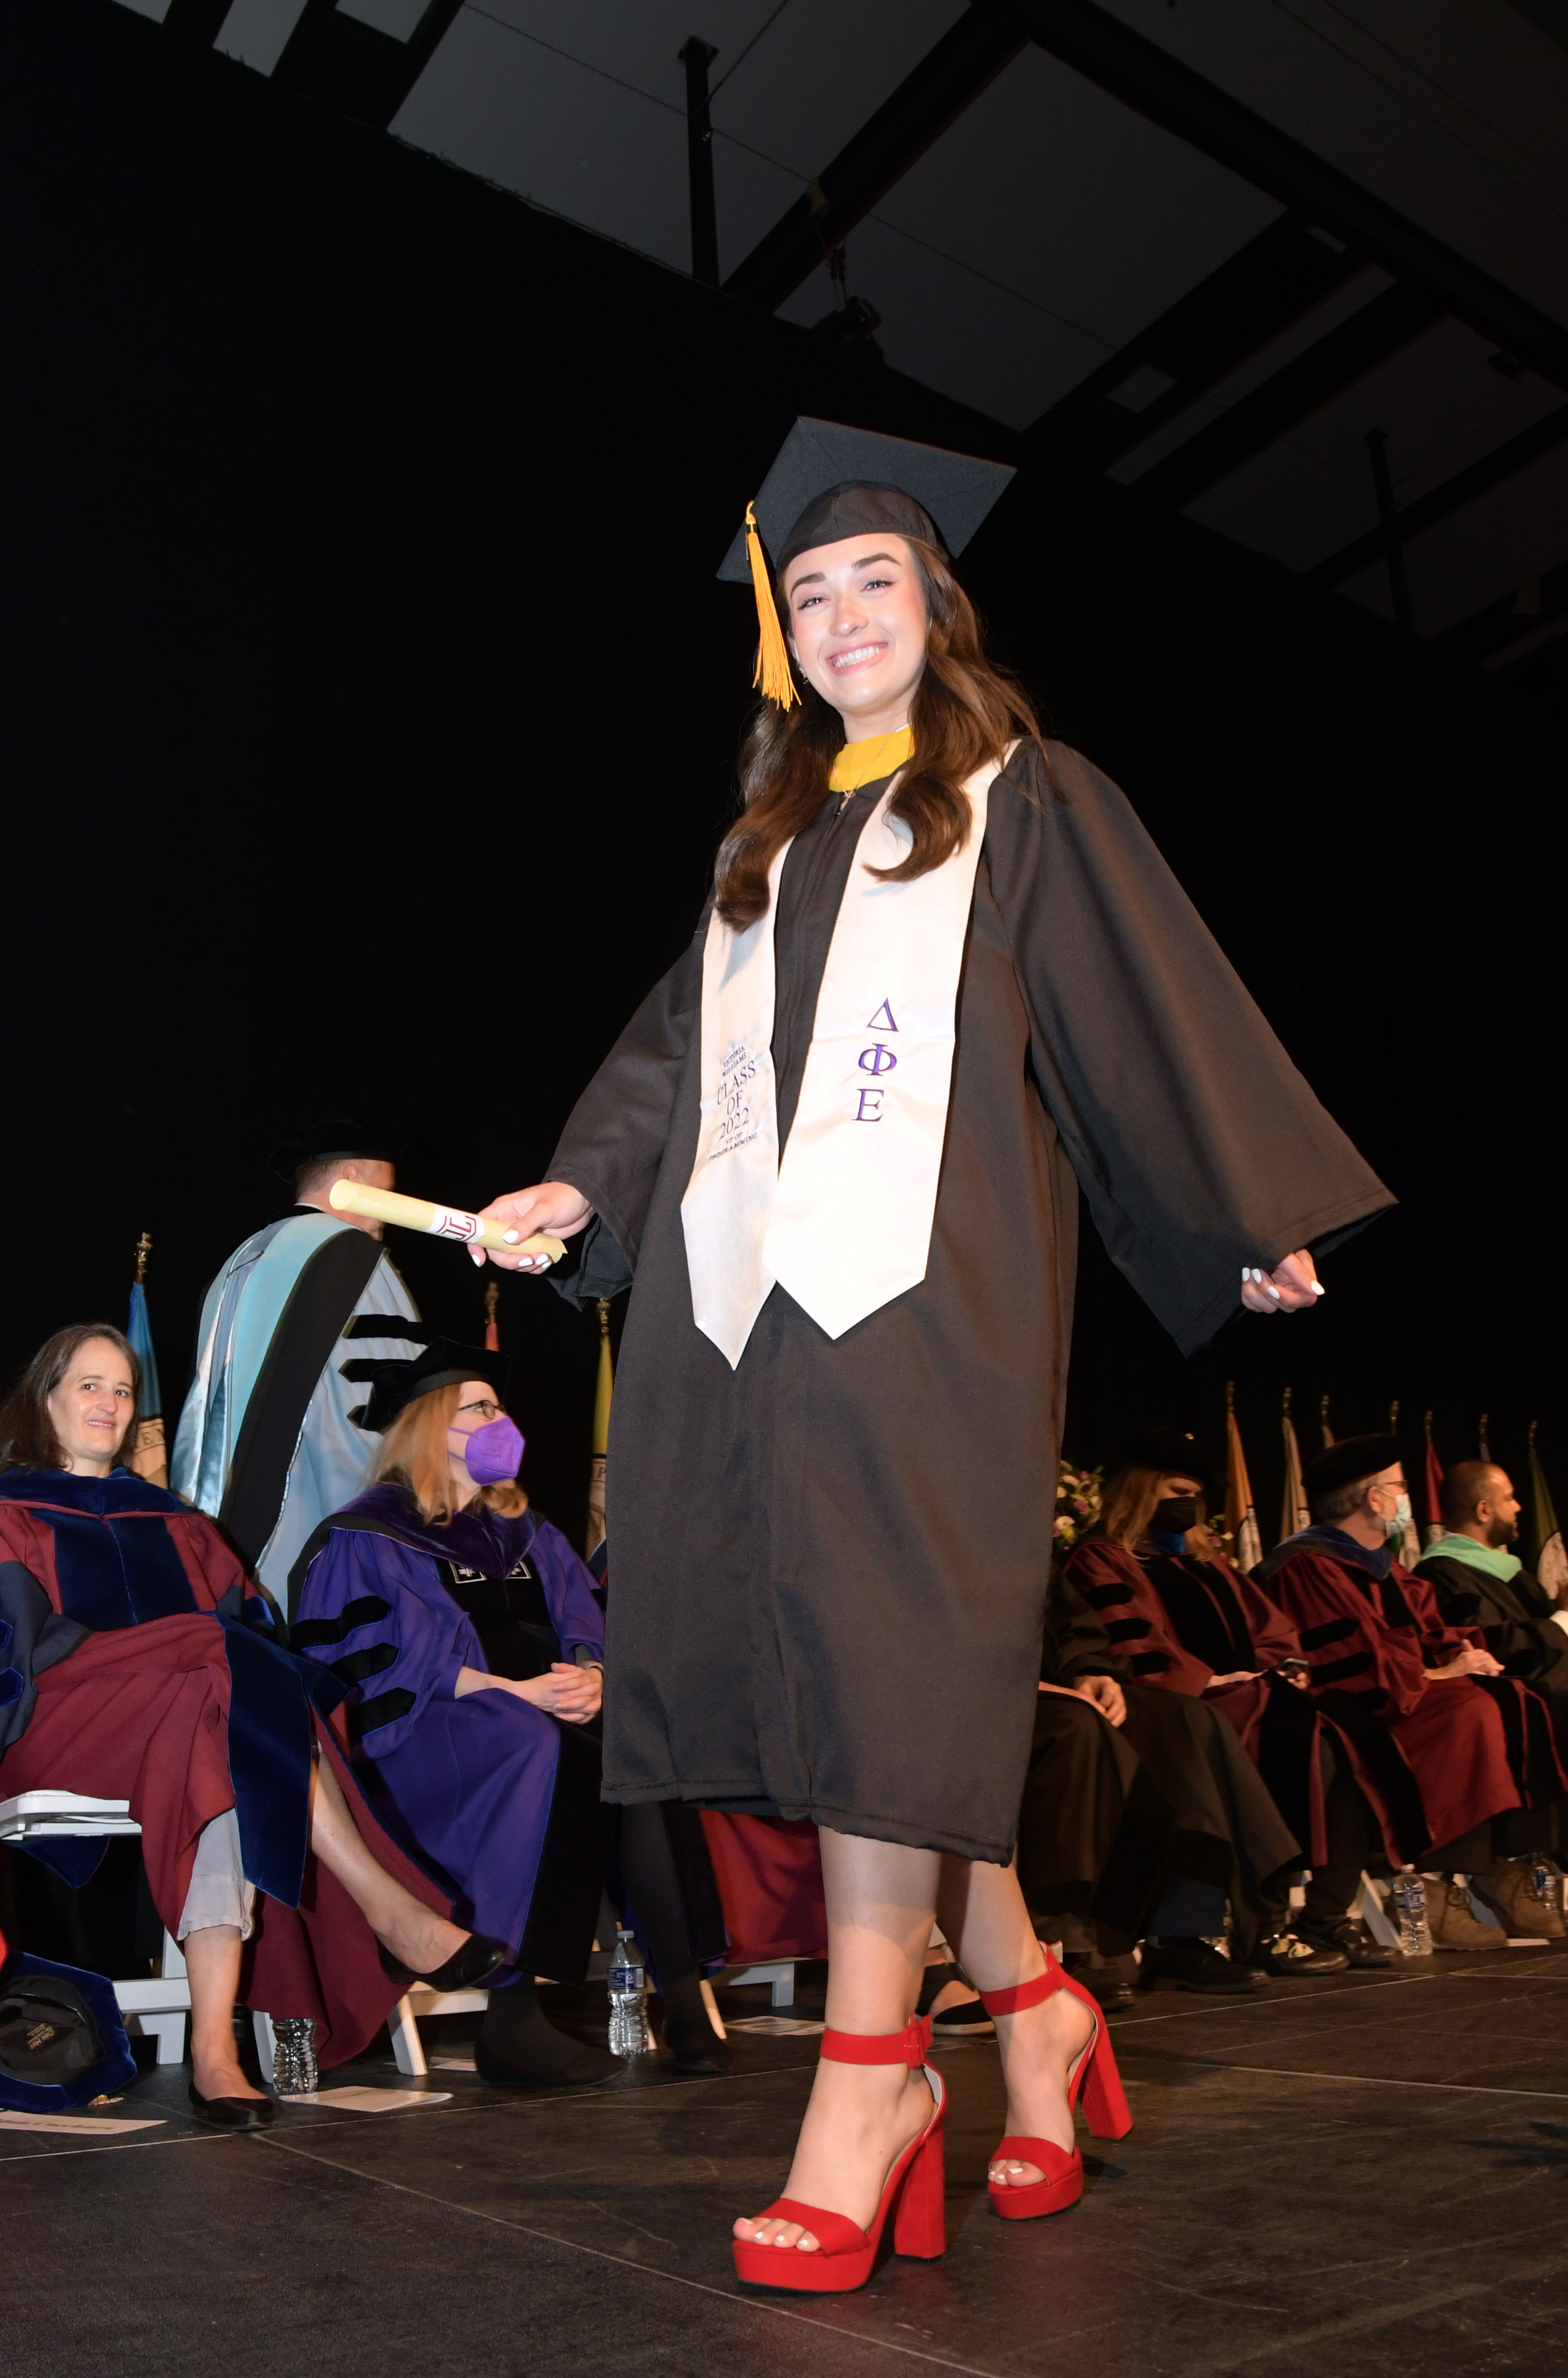 graduate walking across stage